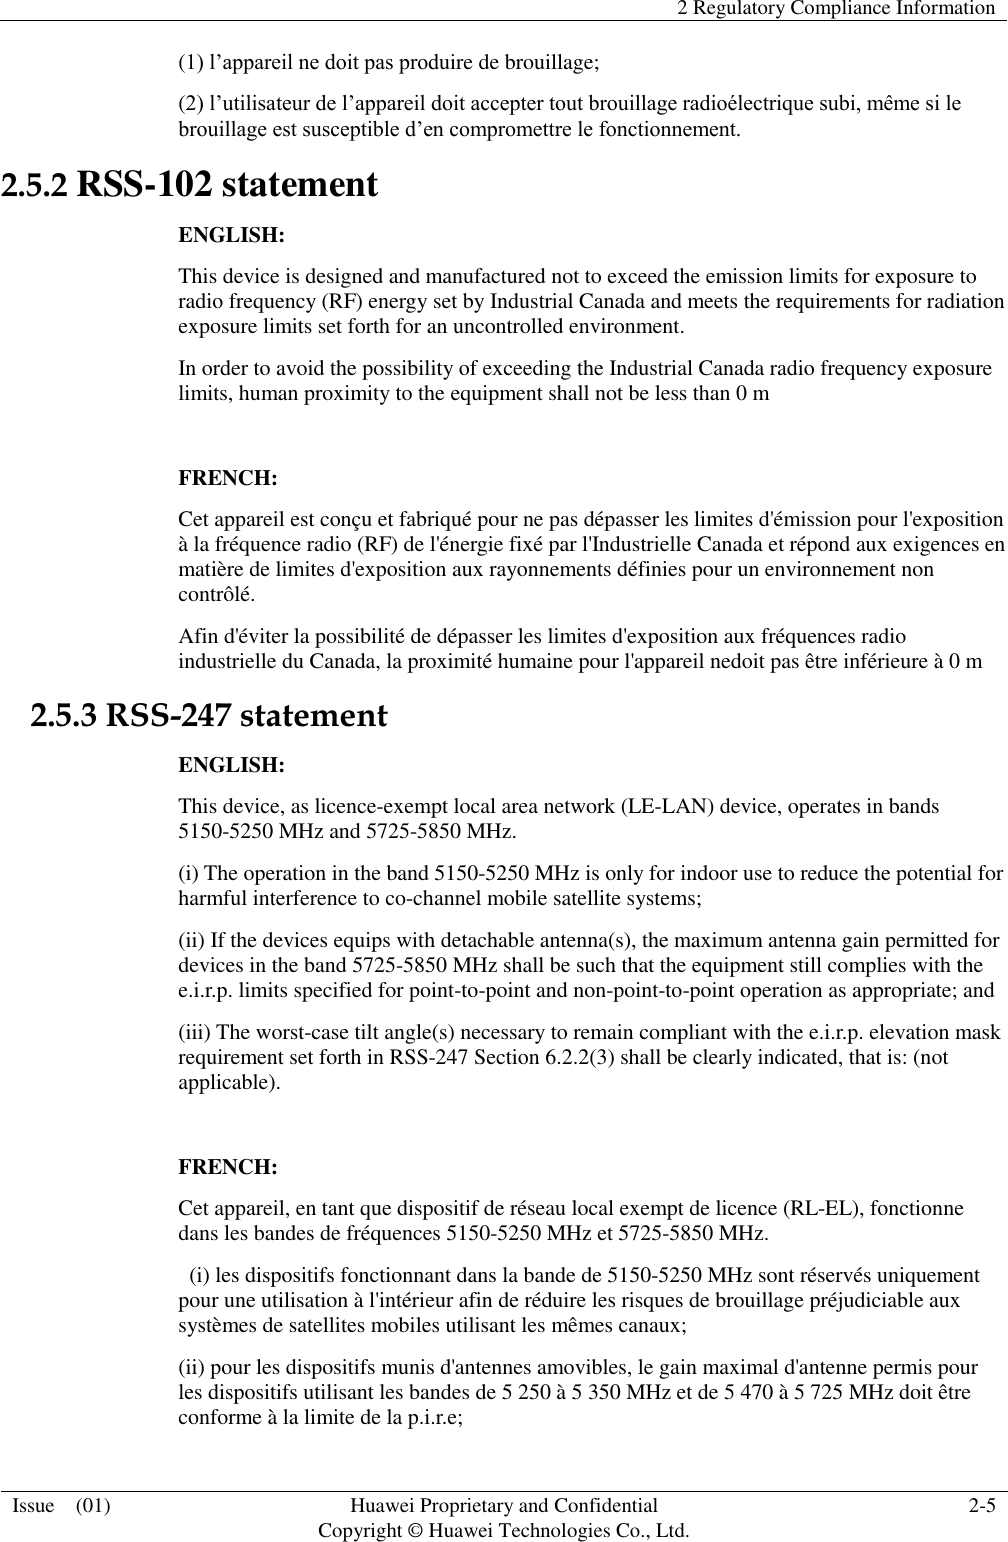   2 Regulatory Compliance Information  Issue    (01) Huawei Proprietary and Confidential                                     Copyright © Huawei Technologies Co., Ltd. 2-5  (1) l’appareil ne doit pas produire de brouillage; (2) l’utilisateur de l’appareil doit accepter tout brouillage radioélectrique subi, même si le brouillage est susceptible d’en compromettre le fonctionnement. 2.5.2 RSS-102 statement ENGLISH: This device is designed and manufactured not to exceed the emission limits for exposure to radio frequency (RF) energy set by Industrial Canada and meets the requirements for radiation exposure limits set forth for an uncontrolled environment. In order to avoid the possibility of exceeding the Industrial Canada radio frequency exposure limits, human proximity to the equipment shall not be less than 0 m  FRENCH: Cet appareil est conçu et fabriqué pour ne pas dépasser les limites d&apos;émission pour l&apos;exposition à la fréquence radio (RF) de l&apos;énergie fixé par l&apos;Industrielle Canada et répond aux exigences en matière de limites d&apos;exposition aux rayonnements définies pour un environnement non contrôlé.   Afin d&apos;éviter la possibilité de dépasser les limites d&apos;exposition aux fréquences radio industrielle du Canada, la proximité humaine pour l&apos;appareil nedoit pas être inférieure à 0 m 2.5.3 RSS-247 statement ENGLISH: This device, as licence-exempt local area network (LE-LAN) device, operates in bands 5150-5250 MHz and 5725-5850 MHz. (i) The operation in the band 5150-5250 MHz is only for indoor use to reduce the potential for harmful interference to co-channel mobile satellite systems; (ii) If the devices equips with detachable antenna(s), the maximum antenna gain permitted for devices in the band 5725-5850 MHz shall be such that the equipment still complies with the e.i.r.p. limits specified for point-to-point and non-point-to-point operation as appropriate; and (iii) The worst-case tilt angle(s) necessary to remain compliant with the e.i.r.p. elevation mask requirement set forth in RSS-247 Section 6.2.2(3) shall be clearly indicated, that is: (not applicable).  FRENCH: Cet appareil, en tant que dispositif de réseau local exempt de licence (RL-EL), fonctionne dans les bandes de fréquences 5150-5250 MHz et 5725-5850 MHz.   (i) les dispositifs fonctionnant dans la bande de 5150-5250 MHz sont réservés uniquement pour une utilisation à l&apos;intérieur afin de réduire les risques de brouillage préjudiciable aux systèmes de satellites mobiles utilisant les mêmes canaux; (ii) pour les dispositifs munis d&apos;antennes amovibles, le gain maximal d&apos;antenne permis pour les dispositifs utilisant les bandes de 5 250 à 5 350 MHz et de 5 470 à 5 725 MHz doit être conforme à la limite de la p.i.r.e; 